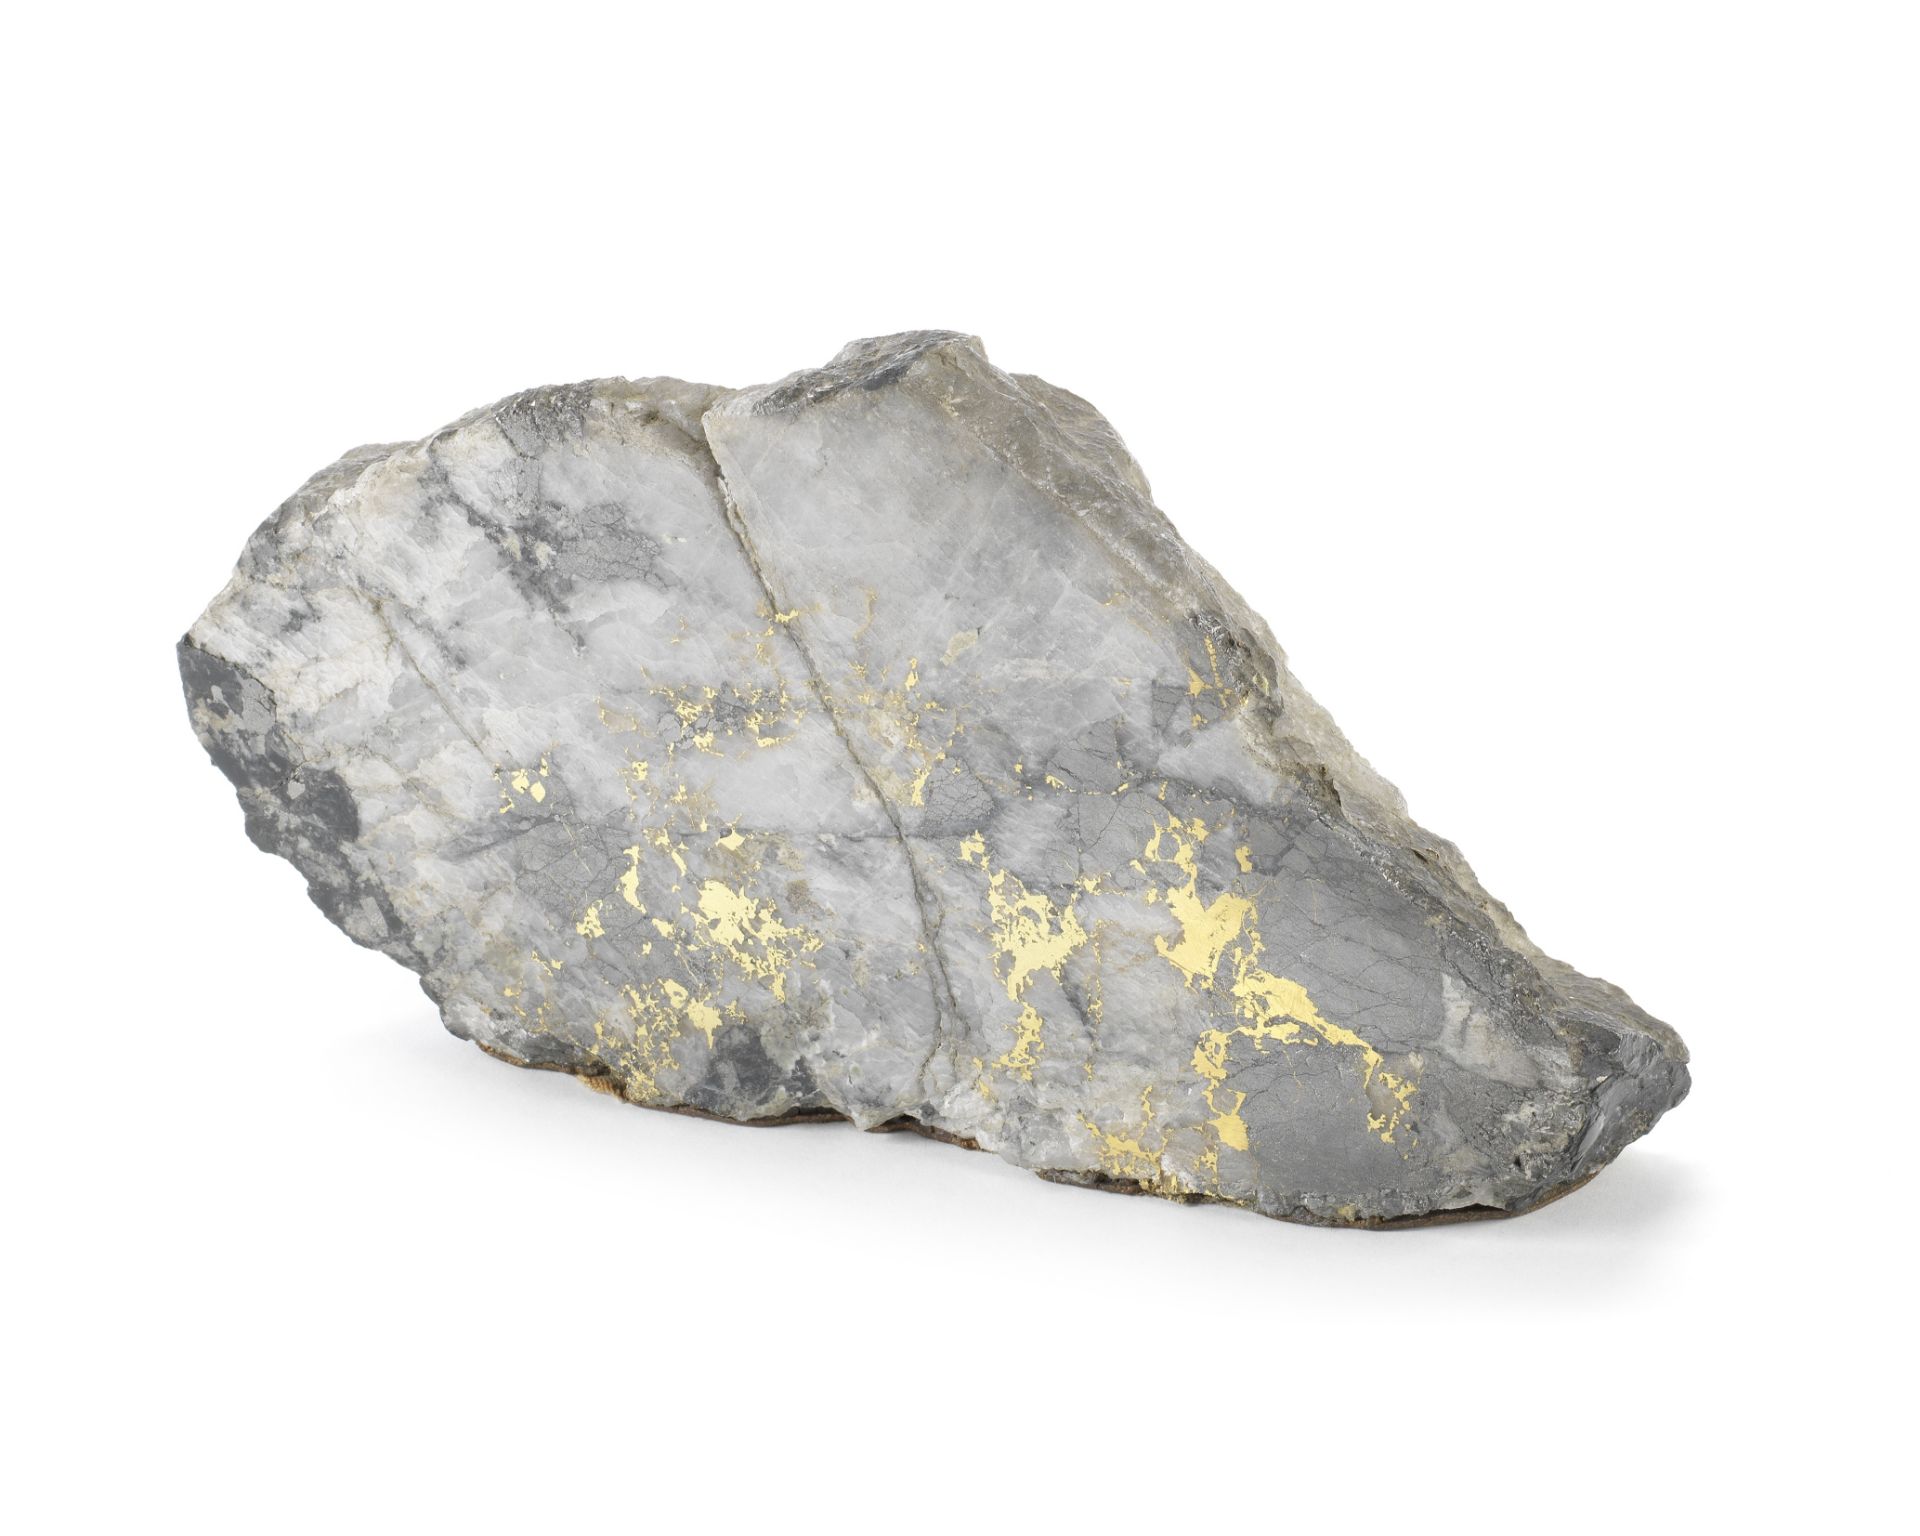 A gold-in-quartz specimen